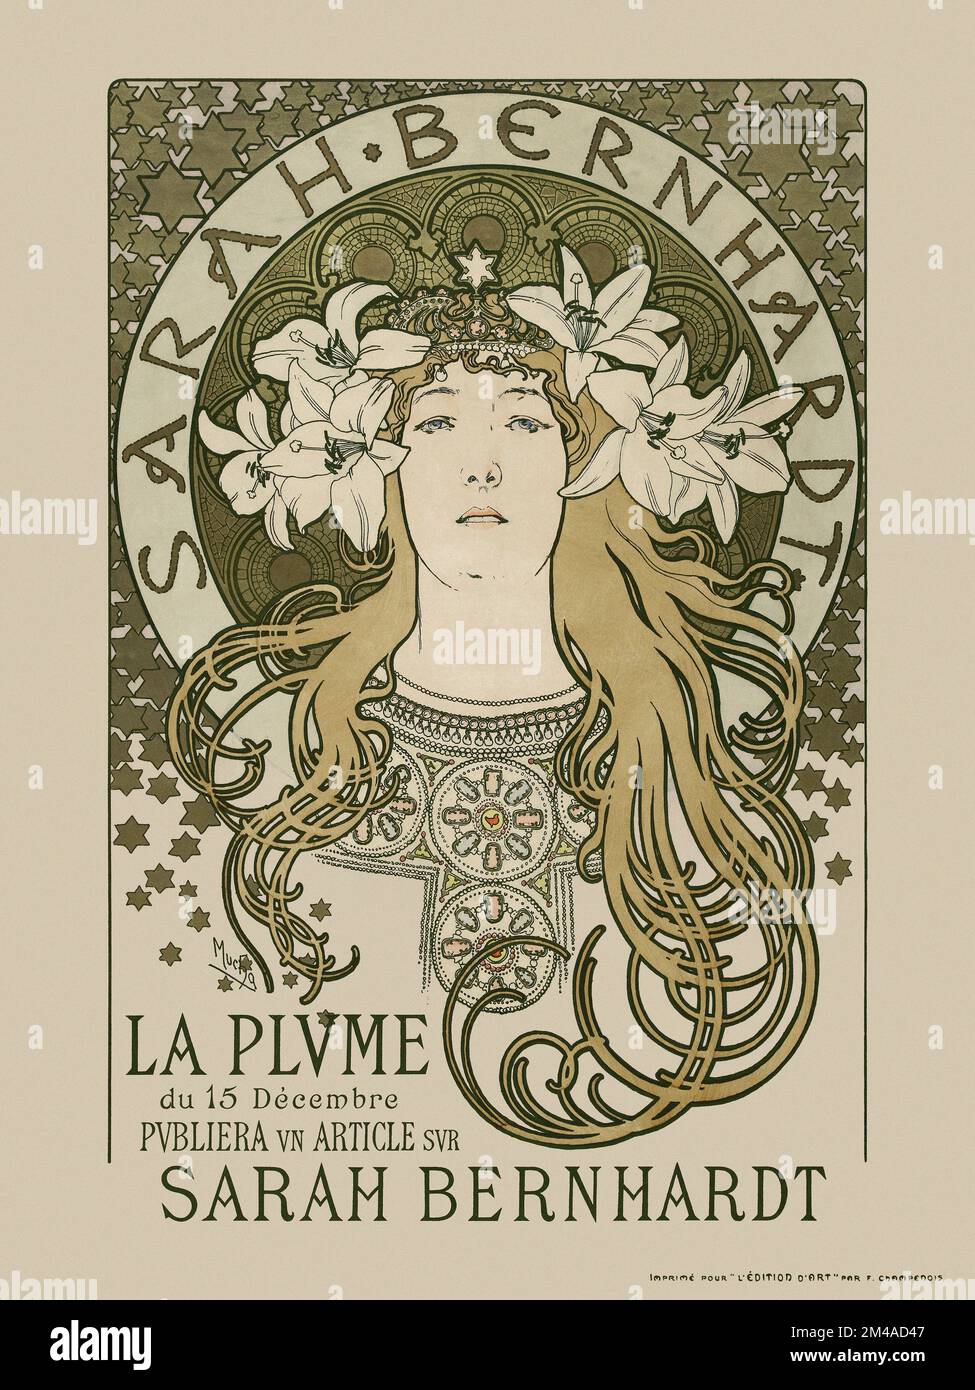 Sarah Bernhardt. La Plume du 15 décembre publiera un article sur Sarah Bernhardt di Alphonse Mucha (1860-1939). Poster pubblicato nel 1897 in Francia. Foto Stock